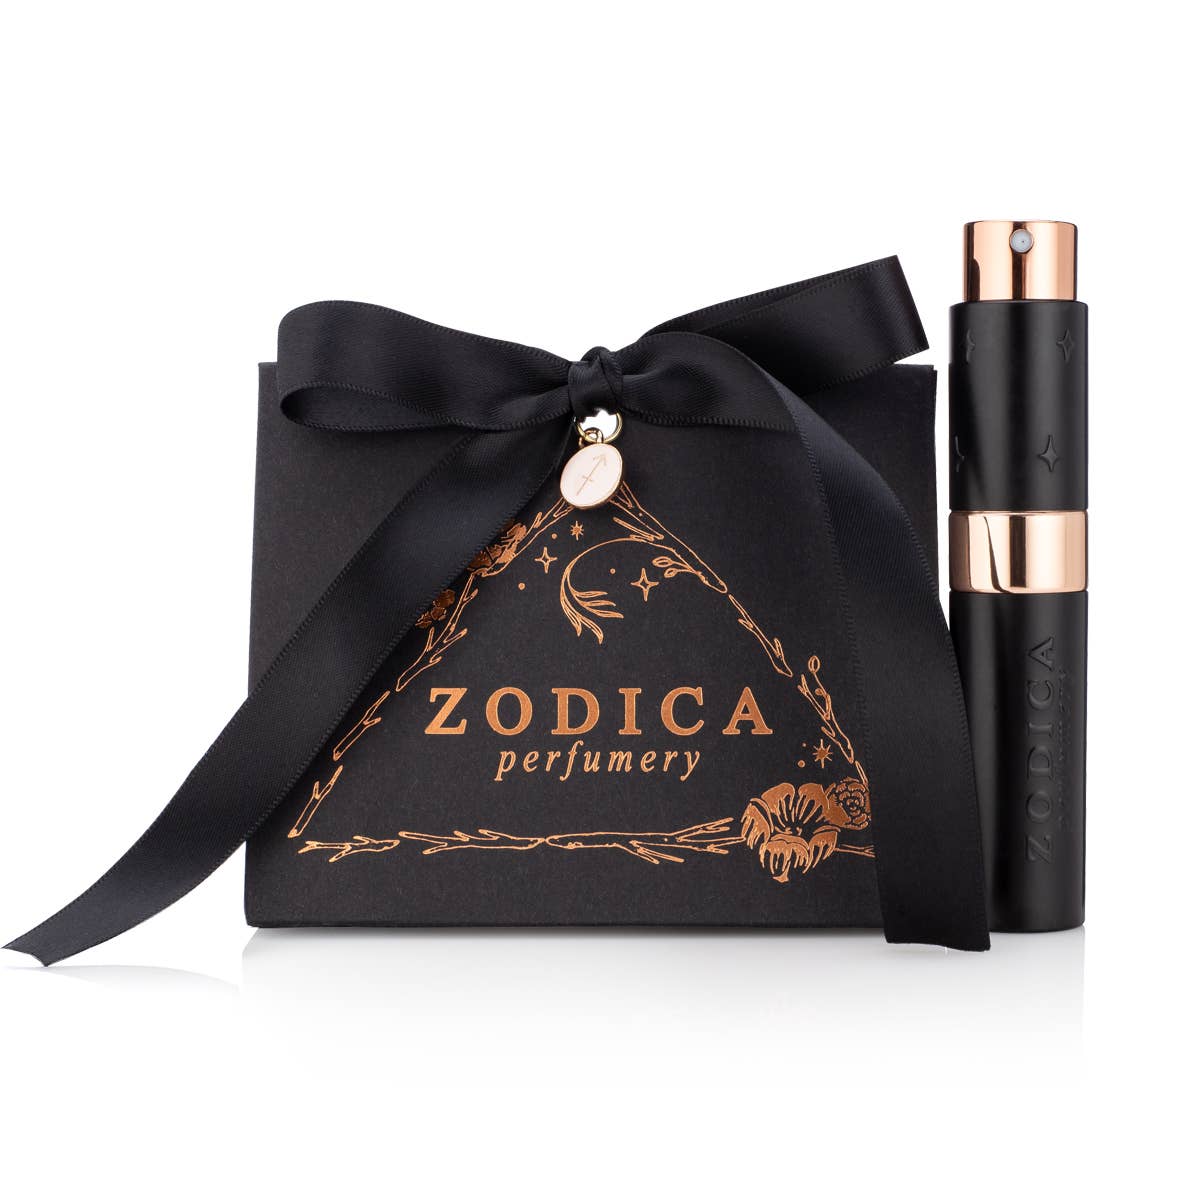 Zodica Perfume Twist & Spritz Travel Spray